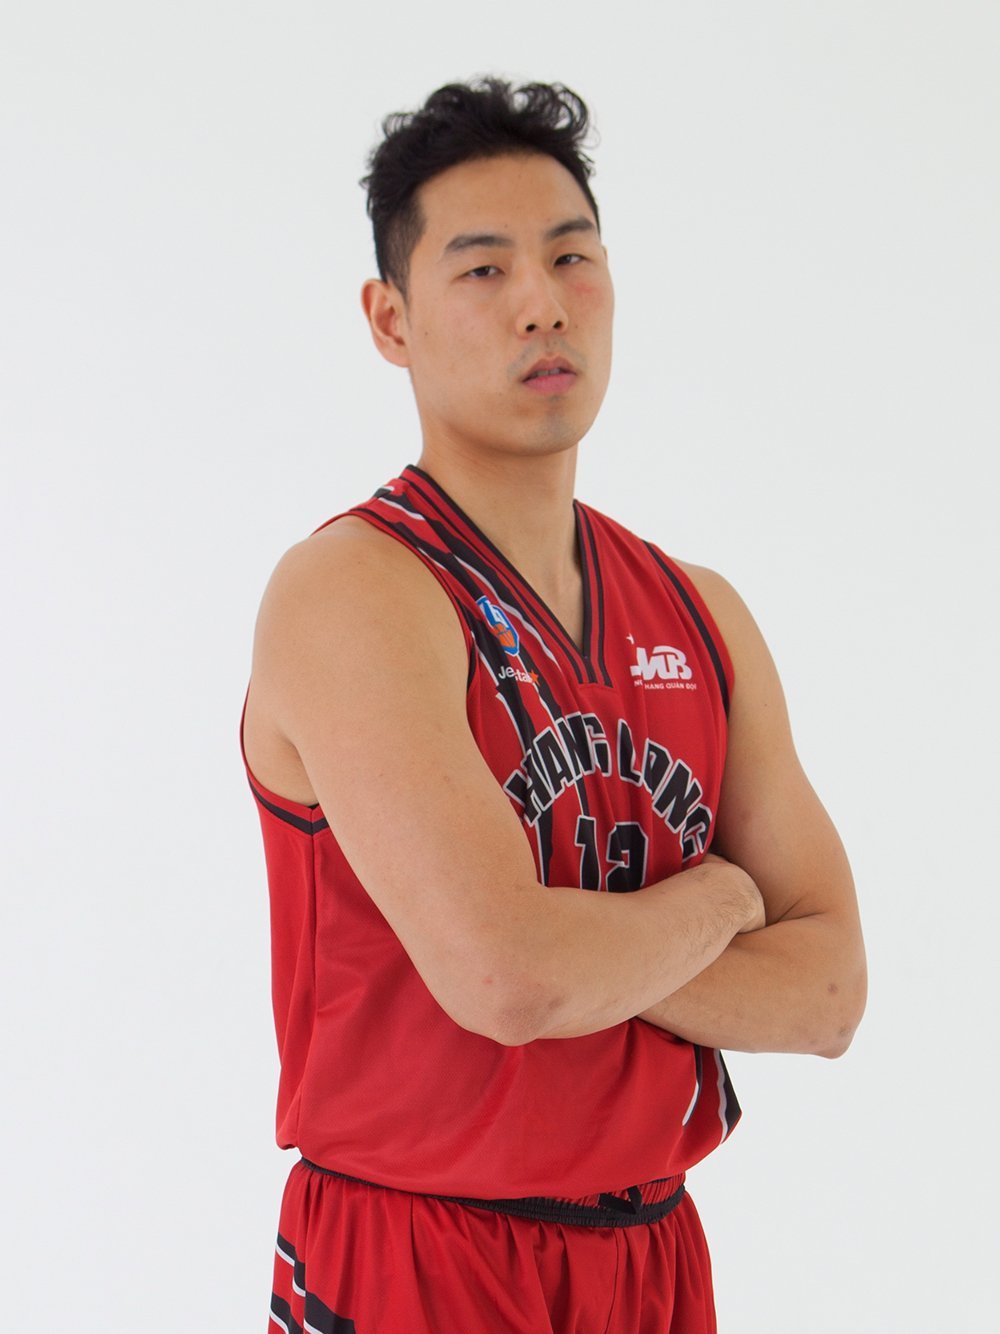  
Young Duong Justin nuôi dưỡng niềm đam mê bóng rổ từ năm 10 tuổi. 